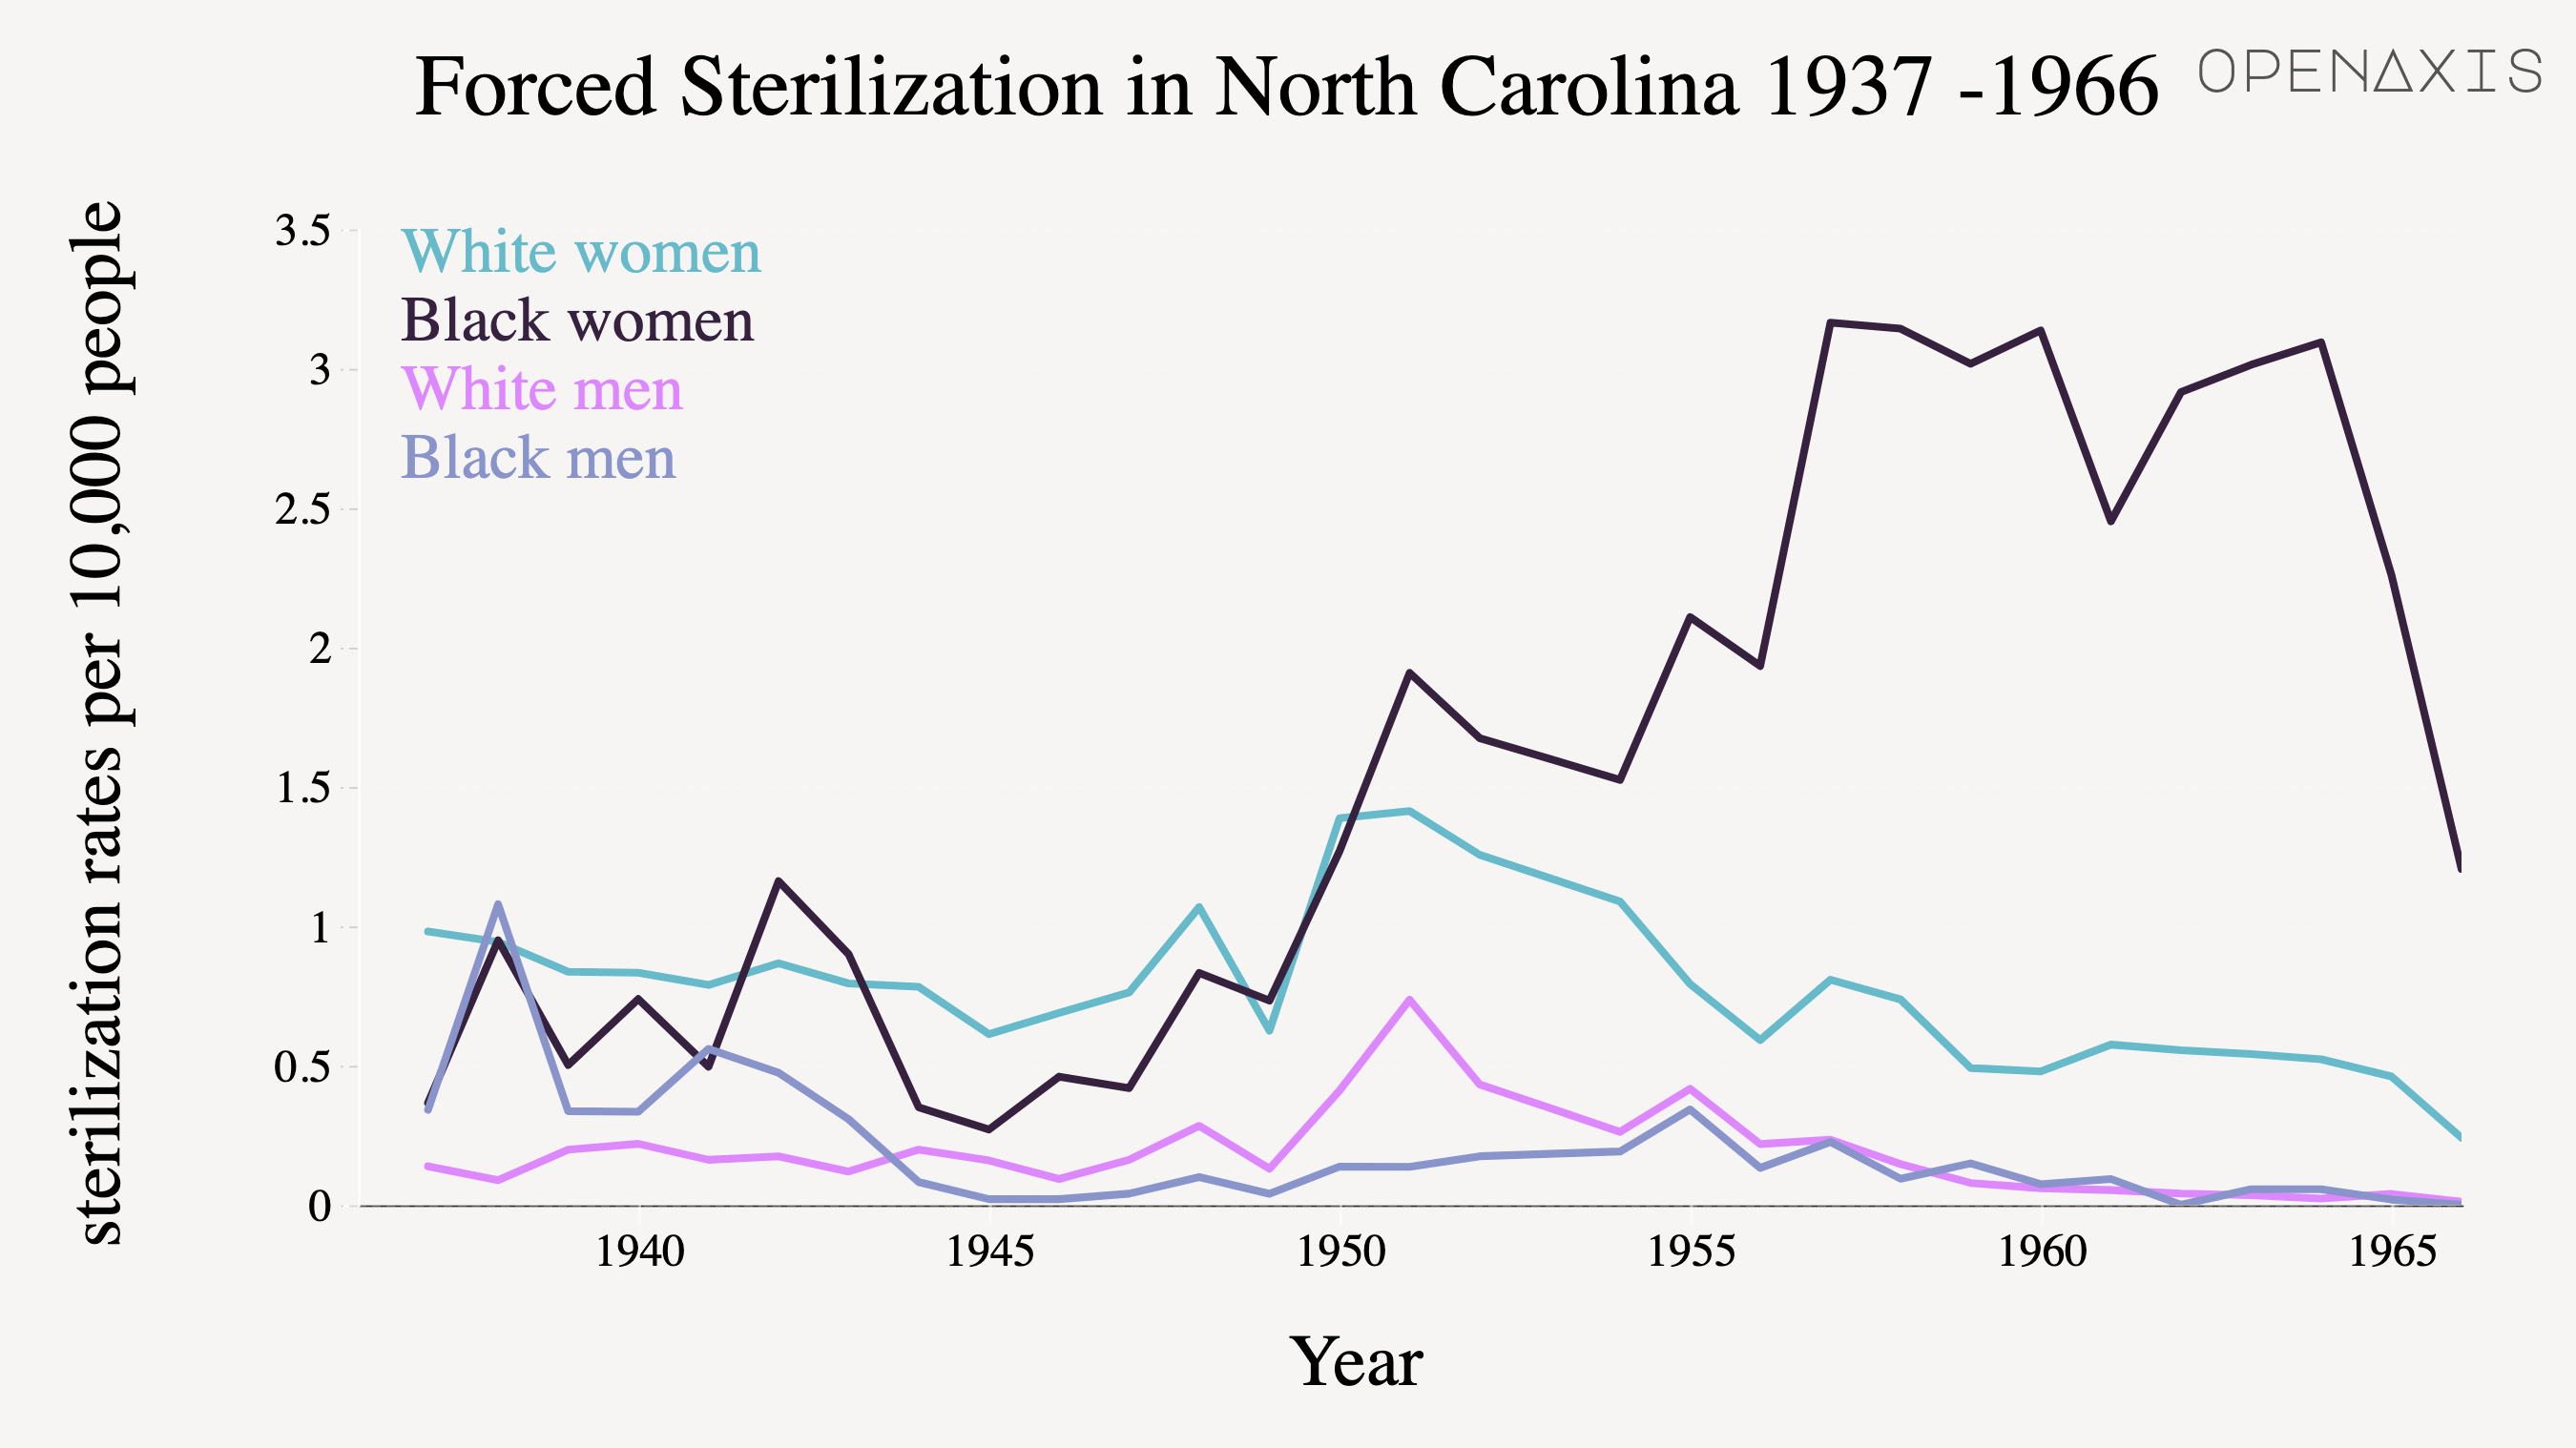 "Forced Sterilization in North Carolina 1937 -1966"